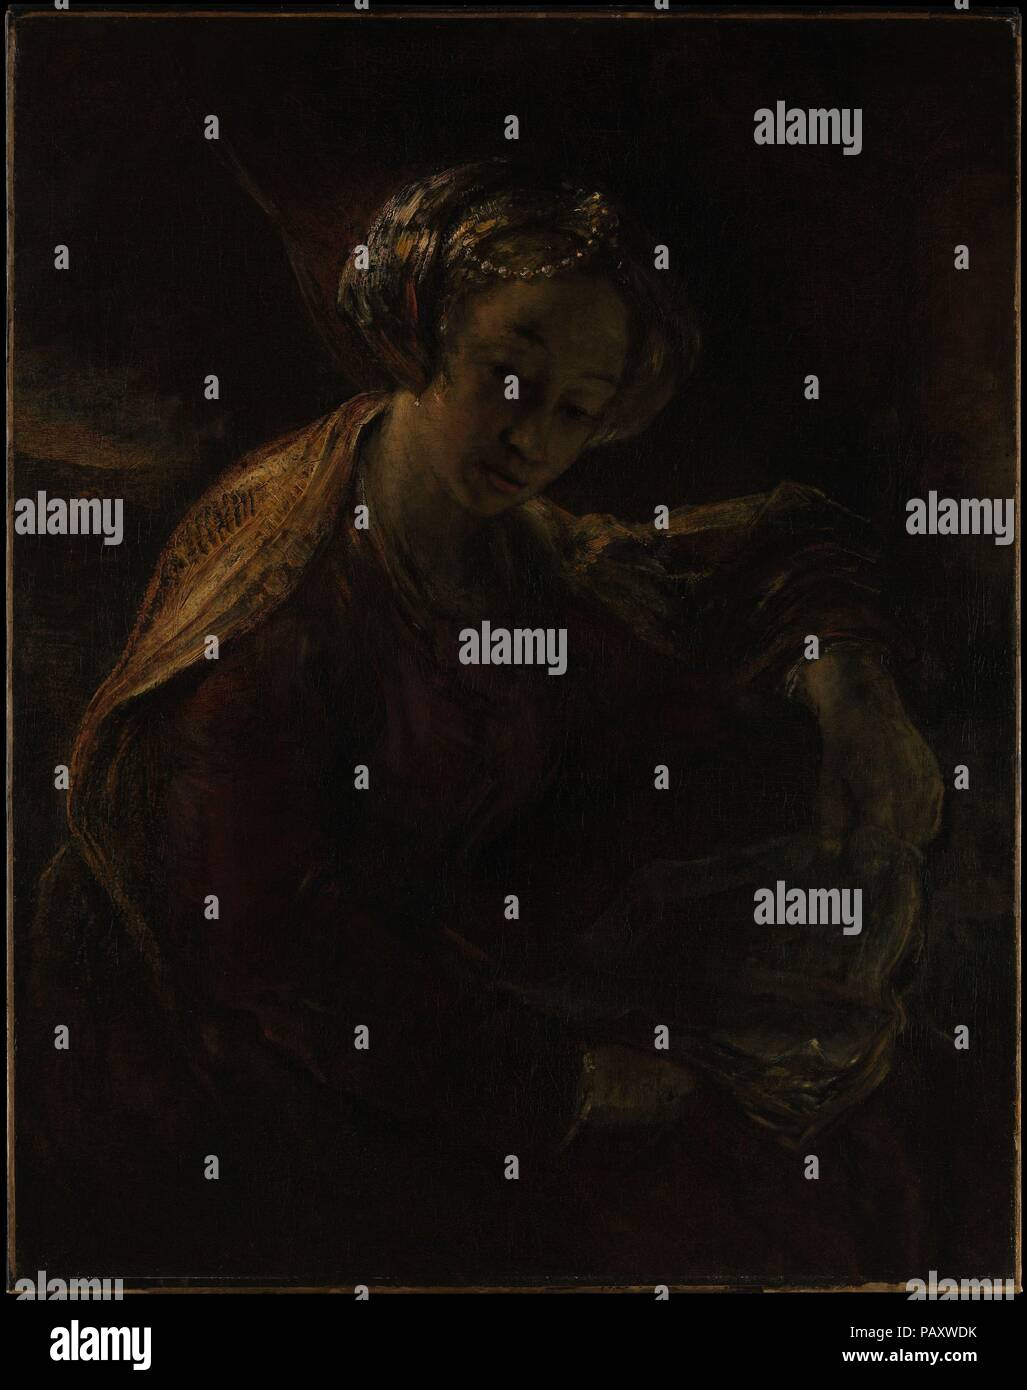 Die guernica. Artist: Willem Drost (Niederländisch, Amsterdam 1633-1659 Venedig). Abmessungen: 38 1/2 x 30 3/4 in. (97,8 x 78,1 cm). Datum: Ca. 1654. Auch wenn einmal ein bekannter Rembrandt, gibt es jetzt einen starken Konsens darüber, dass diese Leinwand wurde 1654-55 durch seinen Schüler gemalt, Willem Drost (1633-1659). Die weibliche Art, die Zeichnung der Gesichtszüge, und der malerischen Ausführung der Kostüm sind charakteristisch für Drost. Das Thema (das ist selten in Nordeuropa) und Zusammensetzung durch eine aktuelle italienische Beispiel inspiriert worden zu sein wie Domenichino <i> Cumaean Sibyl</i> von 1616-17 in der Galleria Stockfoto